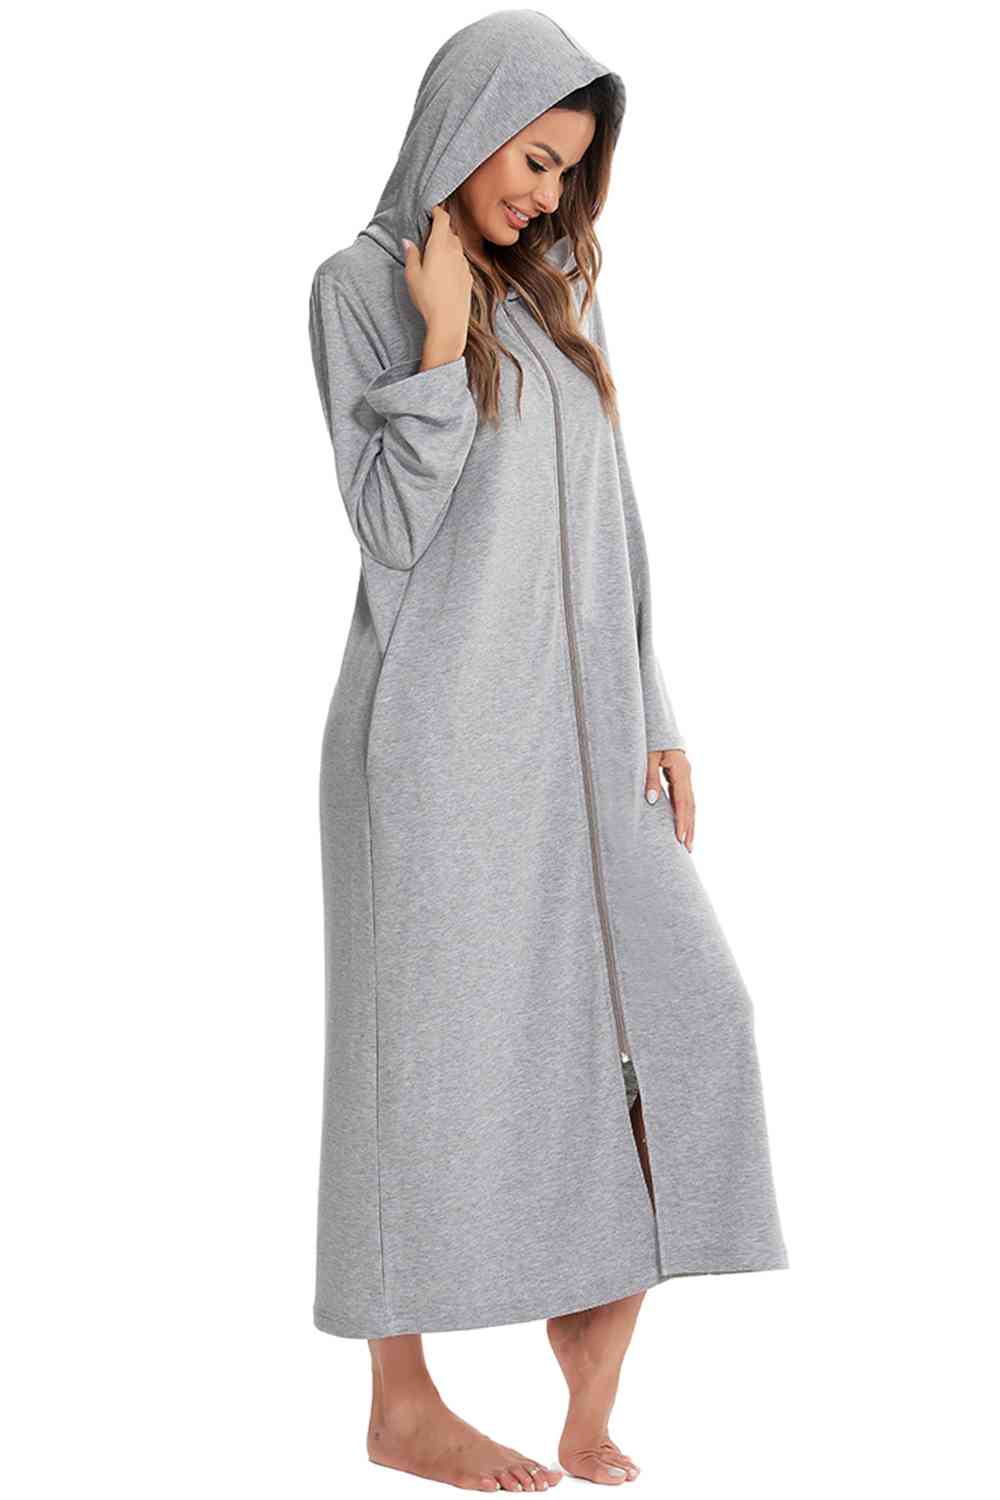 Robe de nuit à capuche zippée sur le devant avec poches